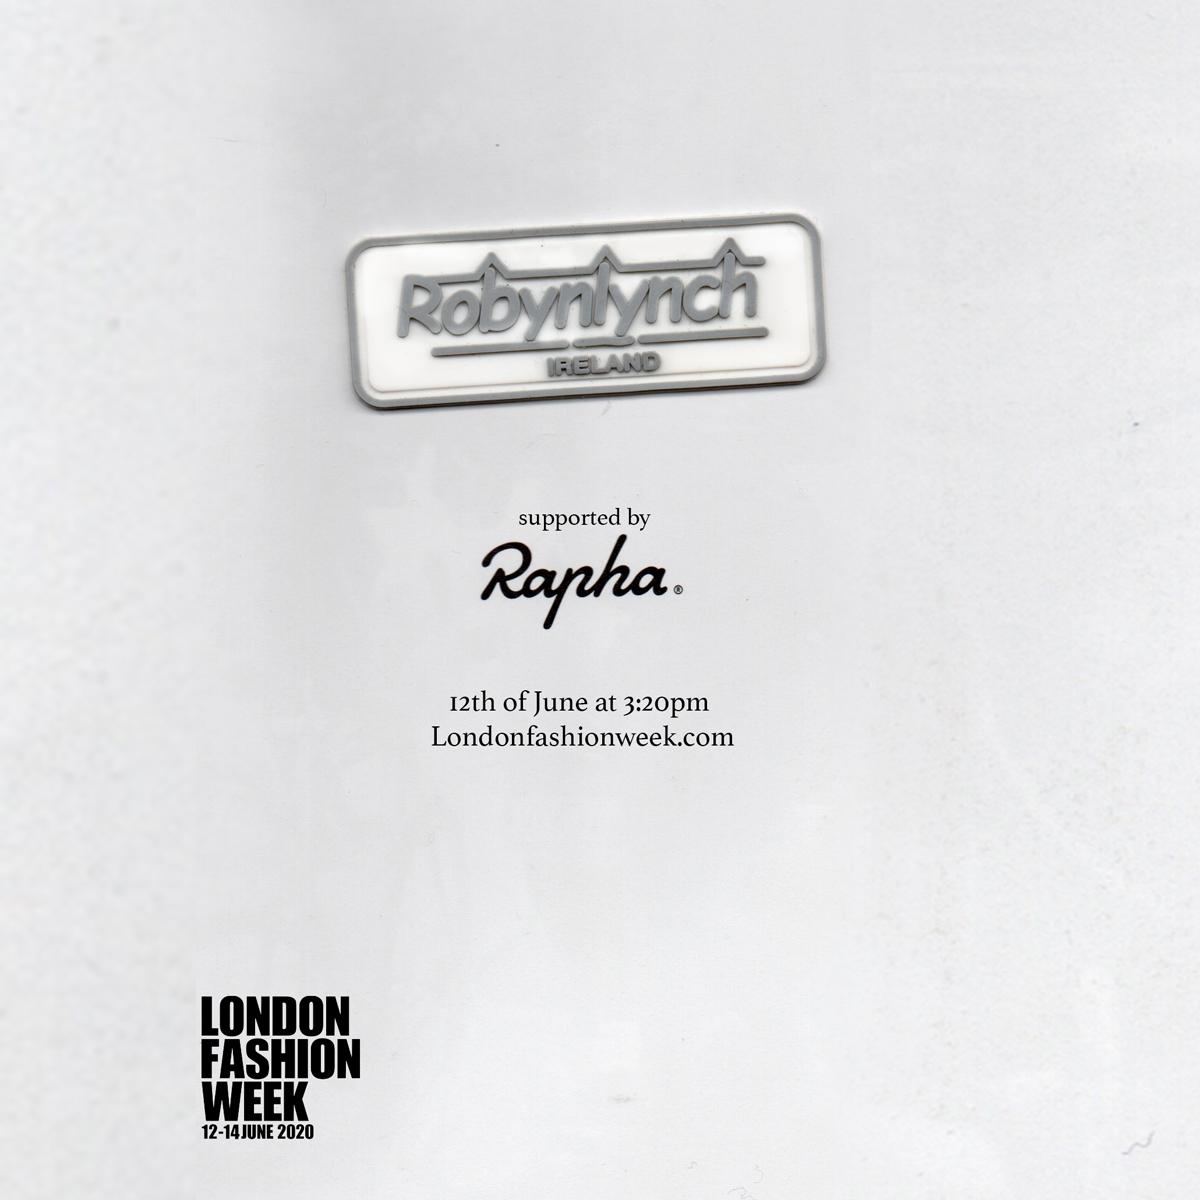 Robyn Lynch supported by Rapha